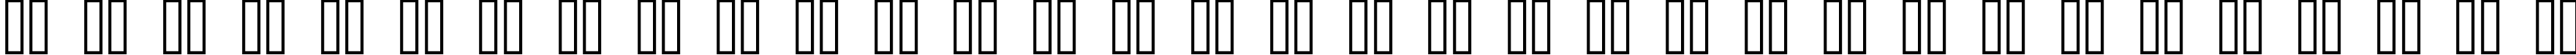 Пример написания русского алфавита шрифтом kroeger 06_56